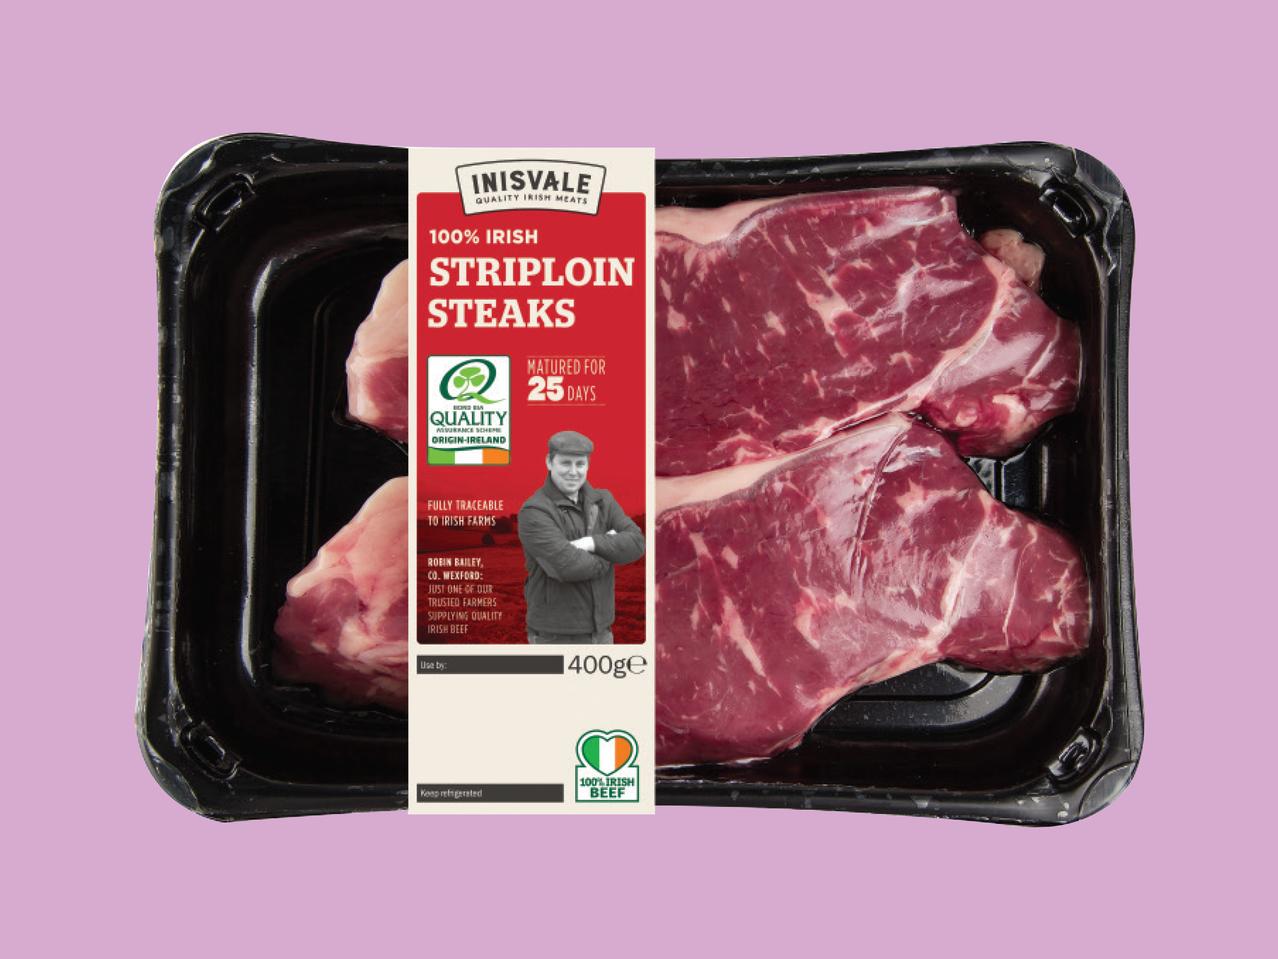 INISVALE Striploin Steaks